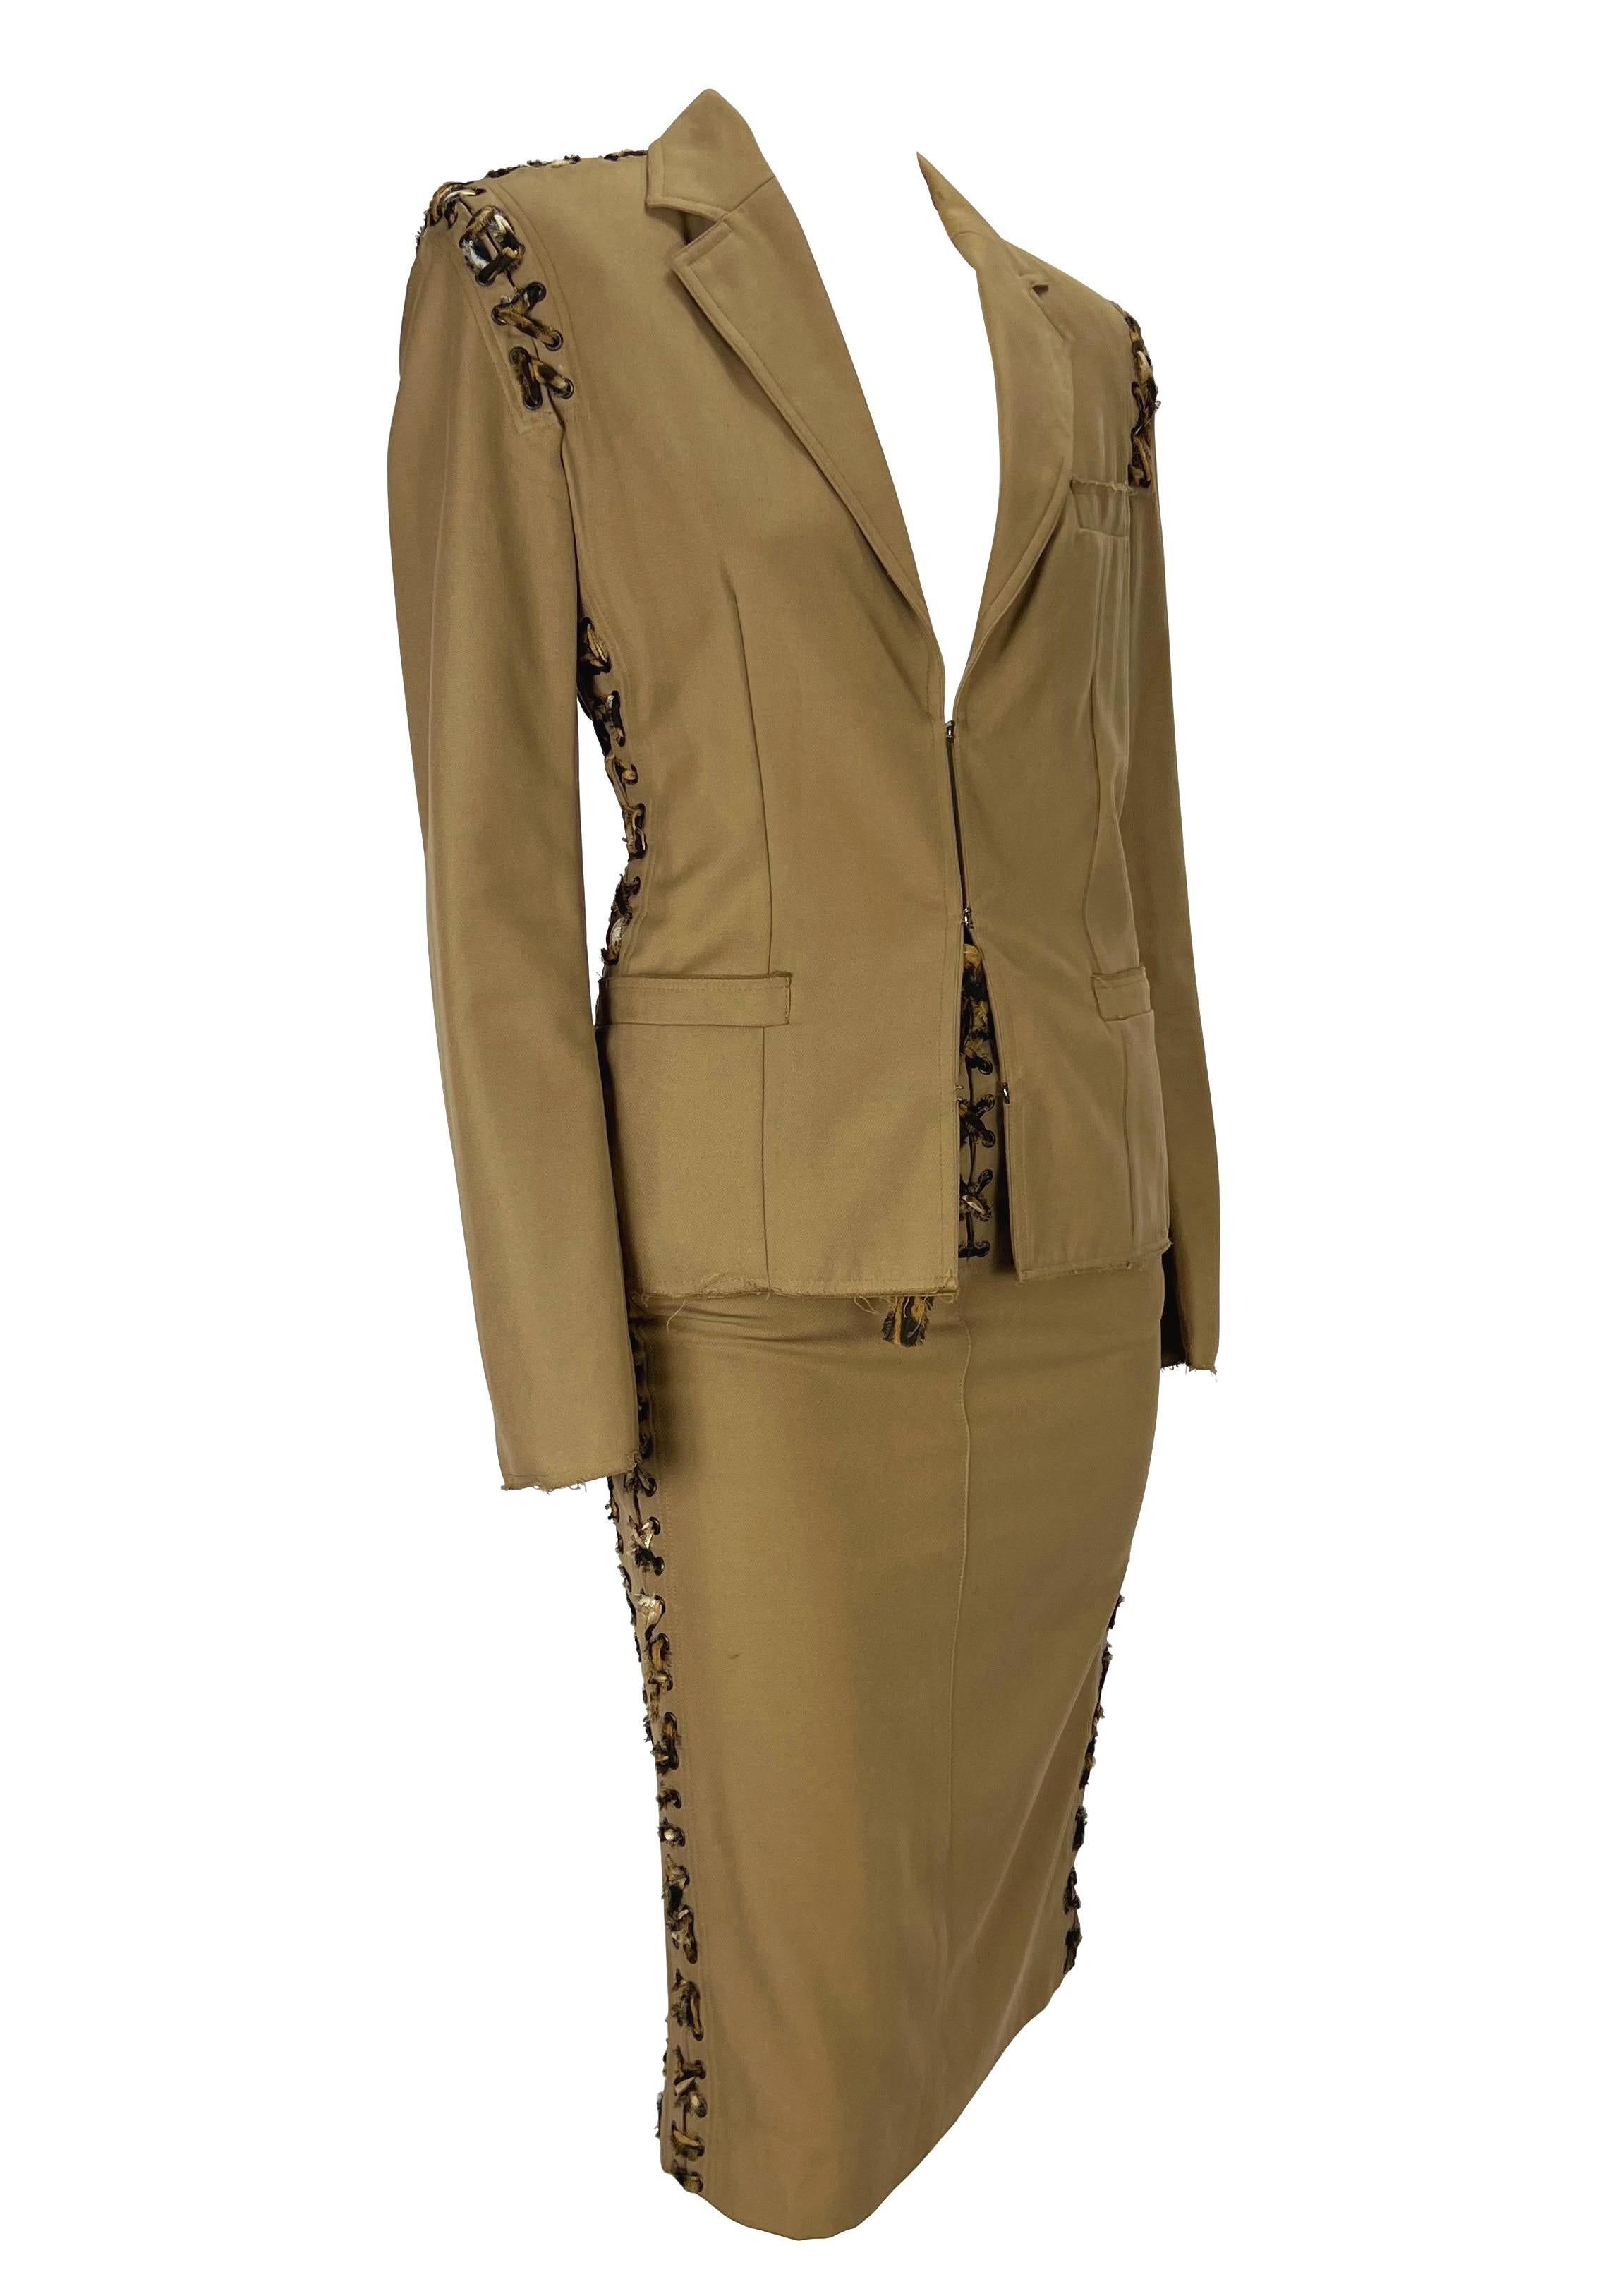 S/S 2002 Yves Saint Laurent by Tom Ford Safari Cheetah Print Lace-Up Khaki Suit (costume) en vente 4